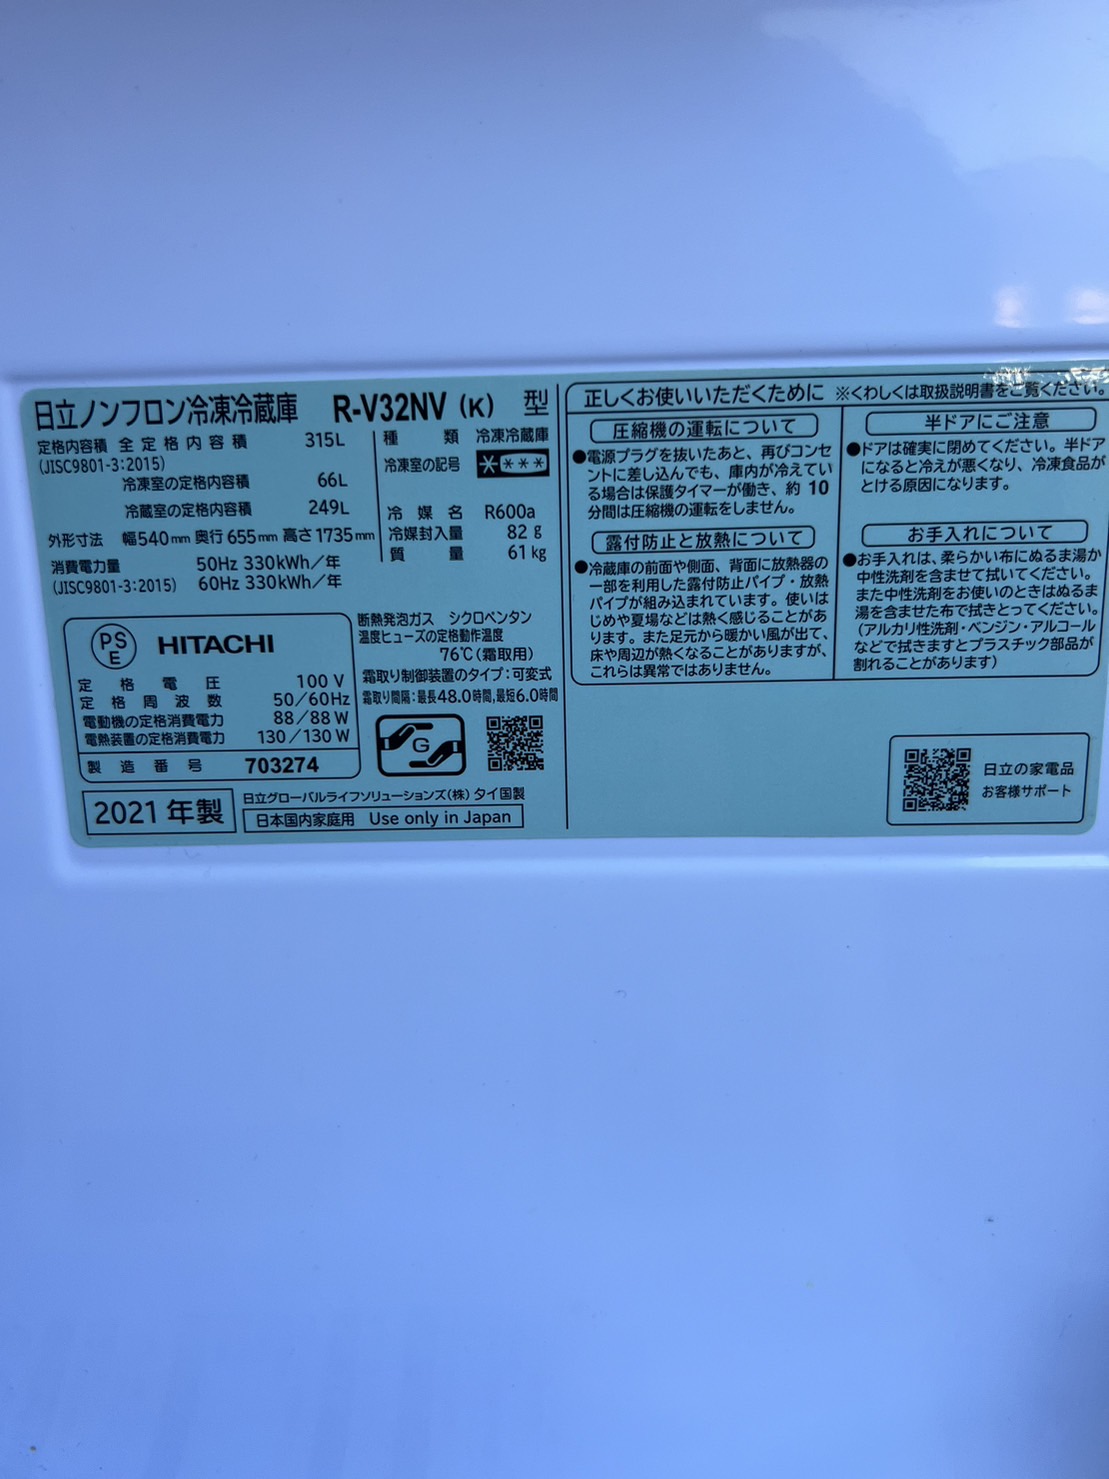 3ドア冷蔵庫 HITACHI R-V32NV(K)買取、出張買取